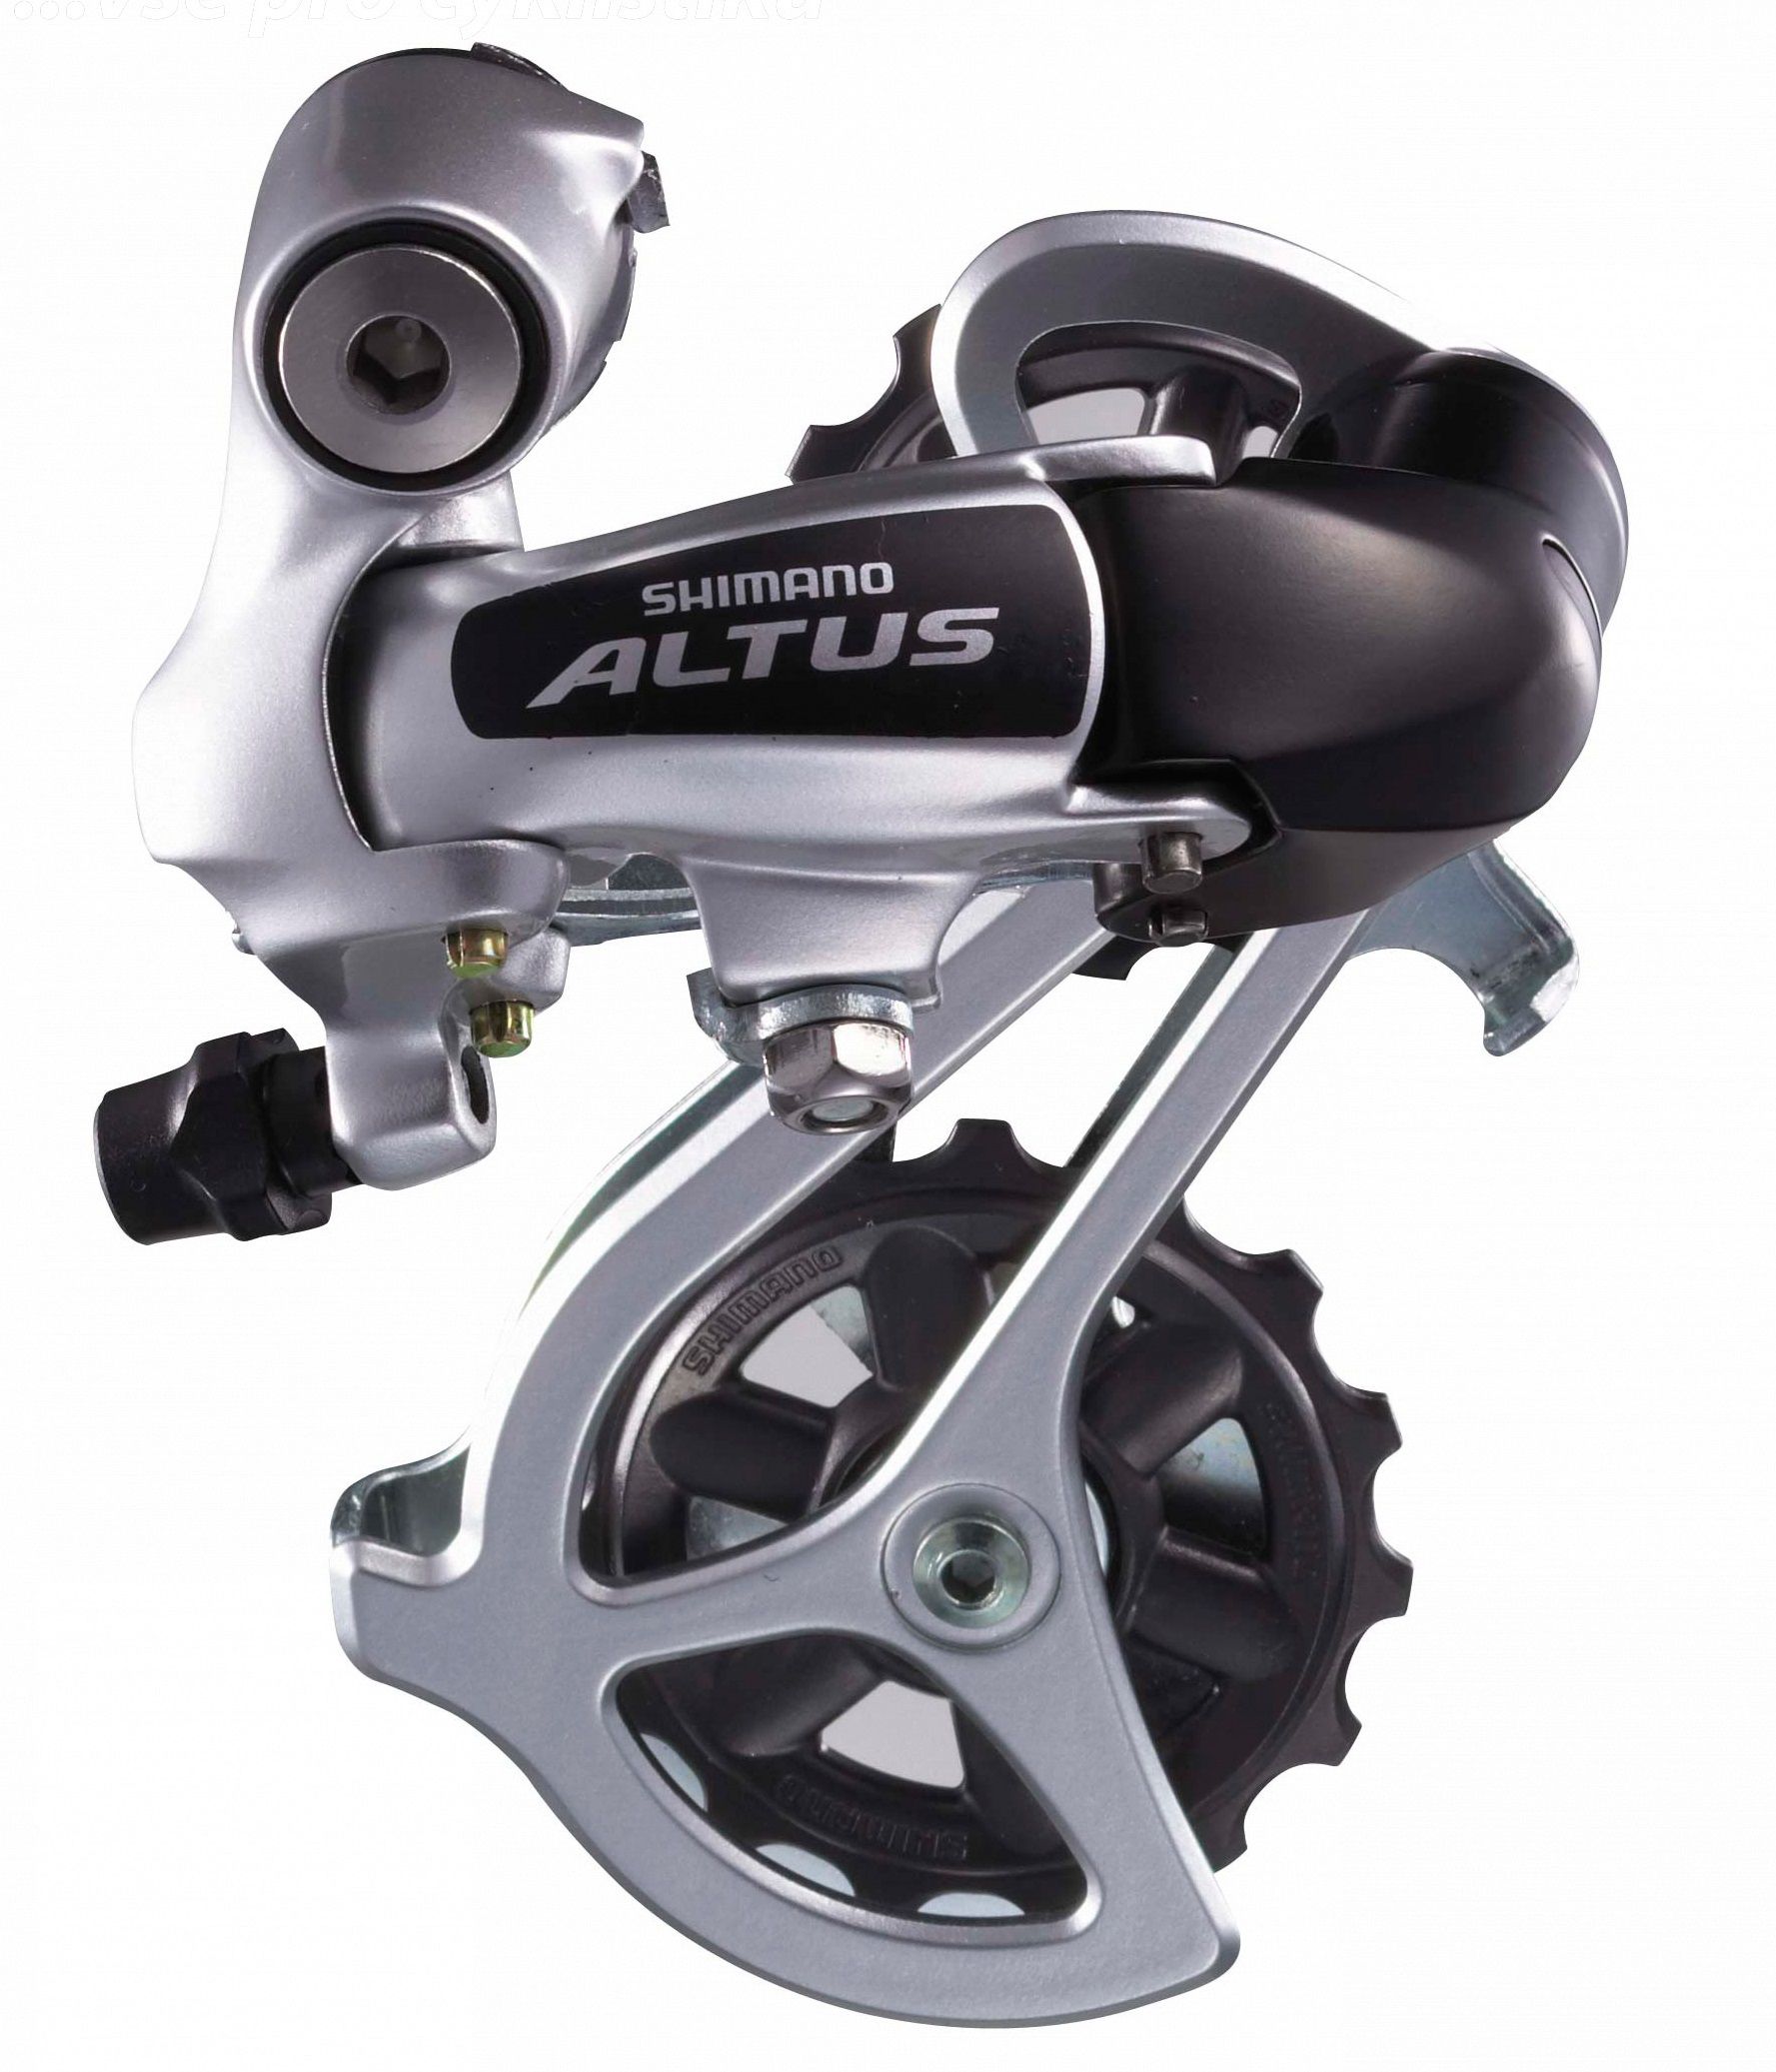  Переключатель задний для велосипеда Shimano Altus M310, 7/8 ск. (ARDM310DS)